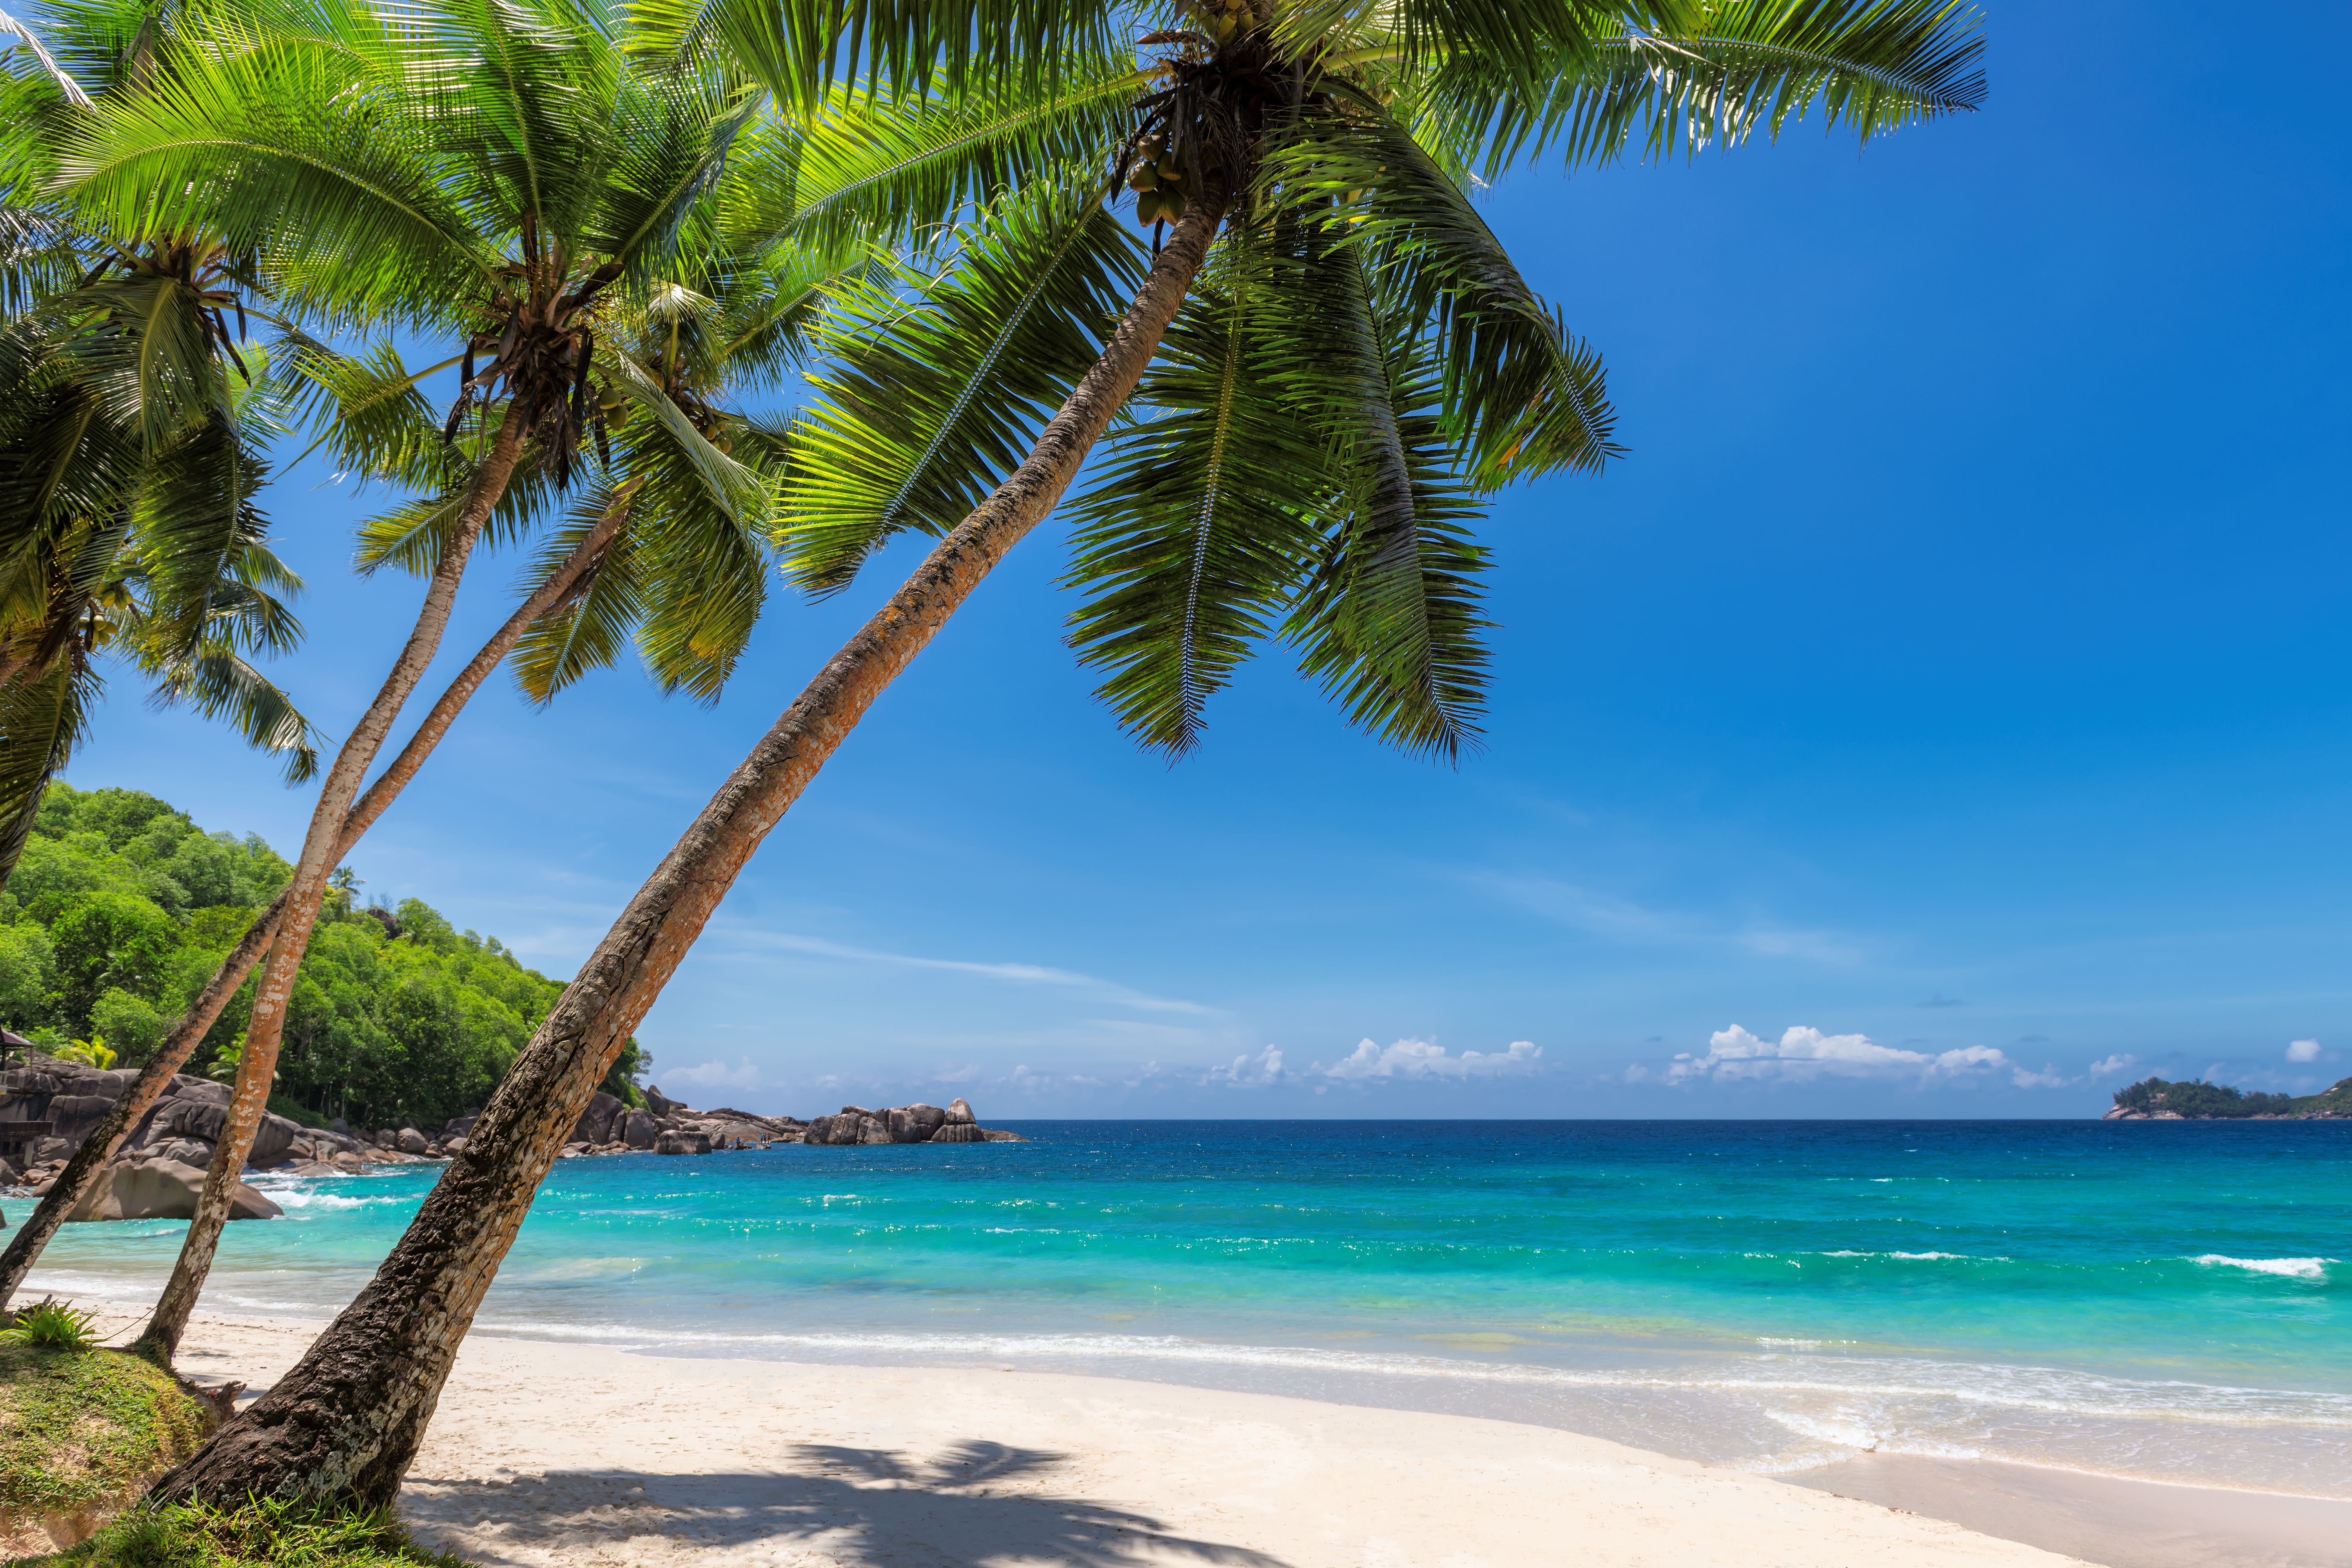 Mimpi: Anda bisa bersantai, berjemur, atau snorkeling di pantai di Jamaika.